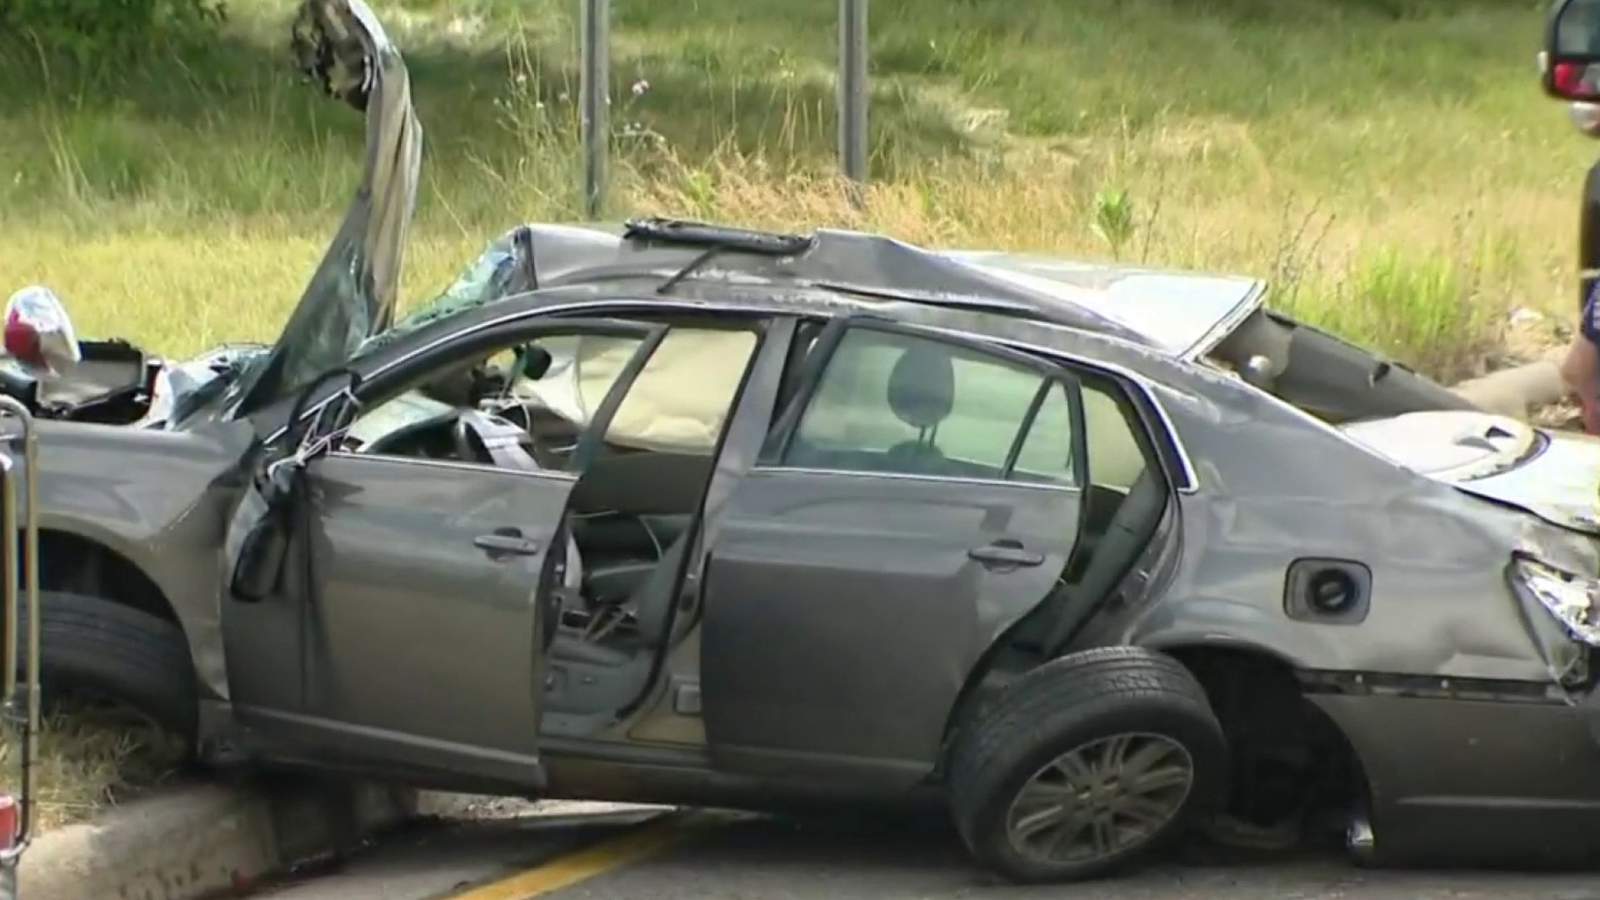 Driver killed in I-96 rollover crash in Detroit